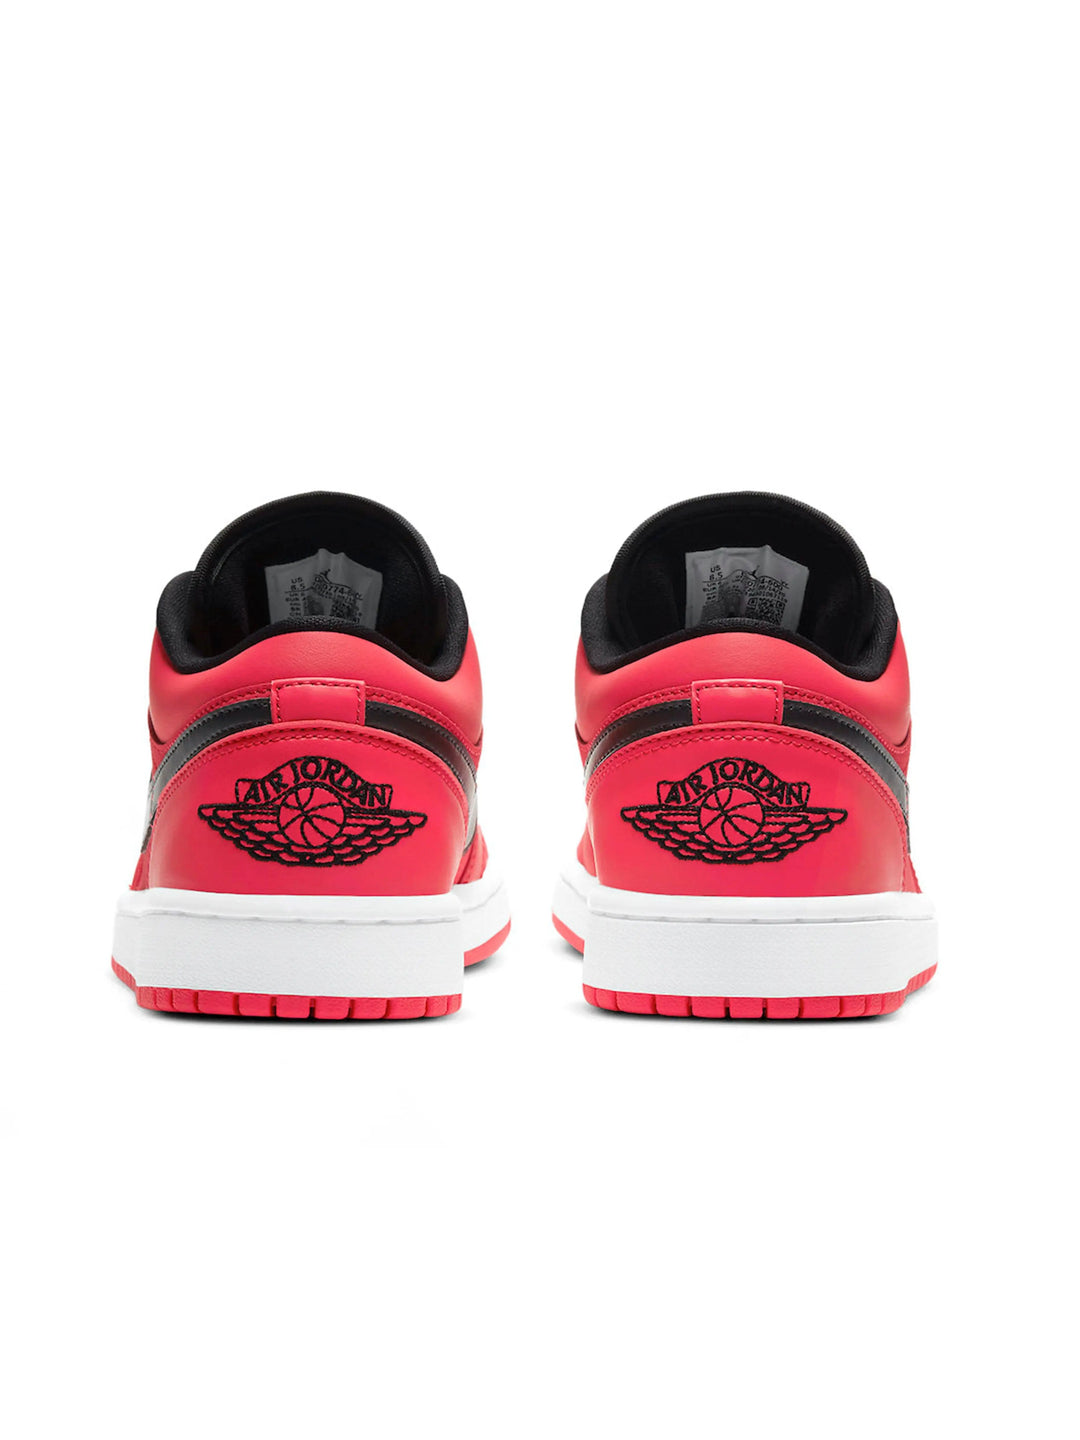 Nike Air Jordan 1 Low Bright Red [W] Prior